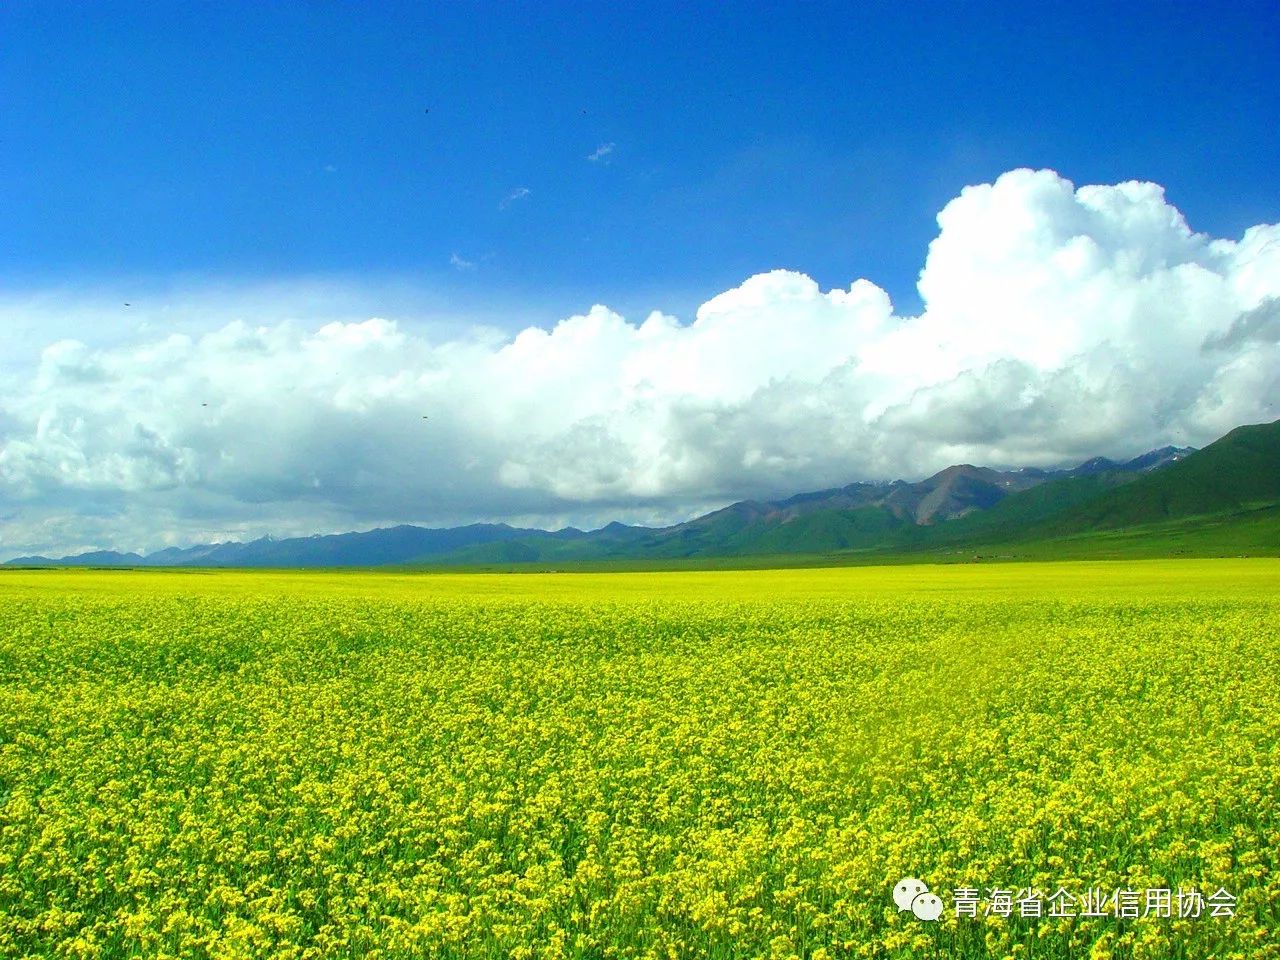 青海浩门农场属百里油菜花海主展区及观光农业核心区,为青海省aaaa